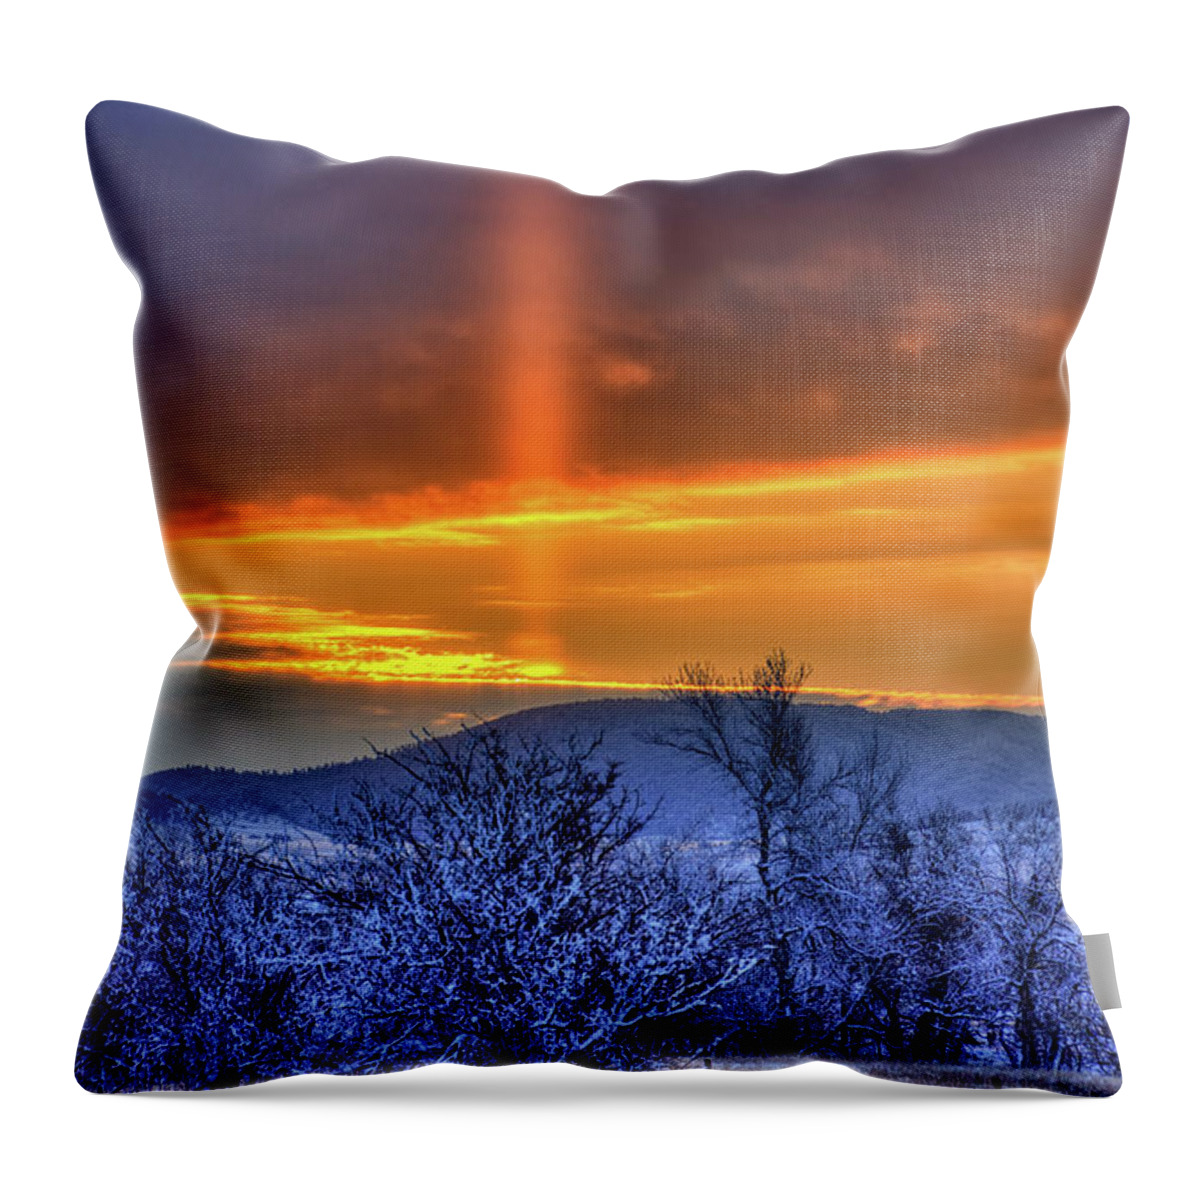 Sun Throw Pillow featuring the photograph Country Winter Sun Pillar by Fiskr Larsen